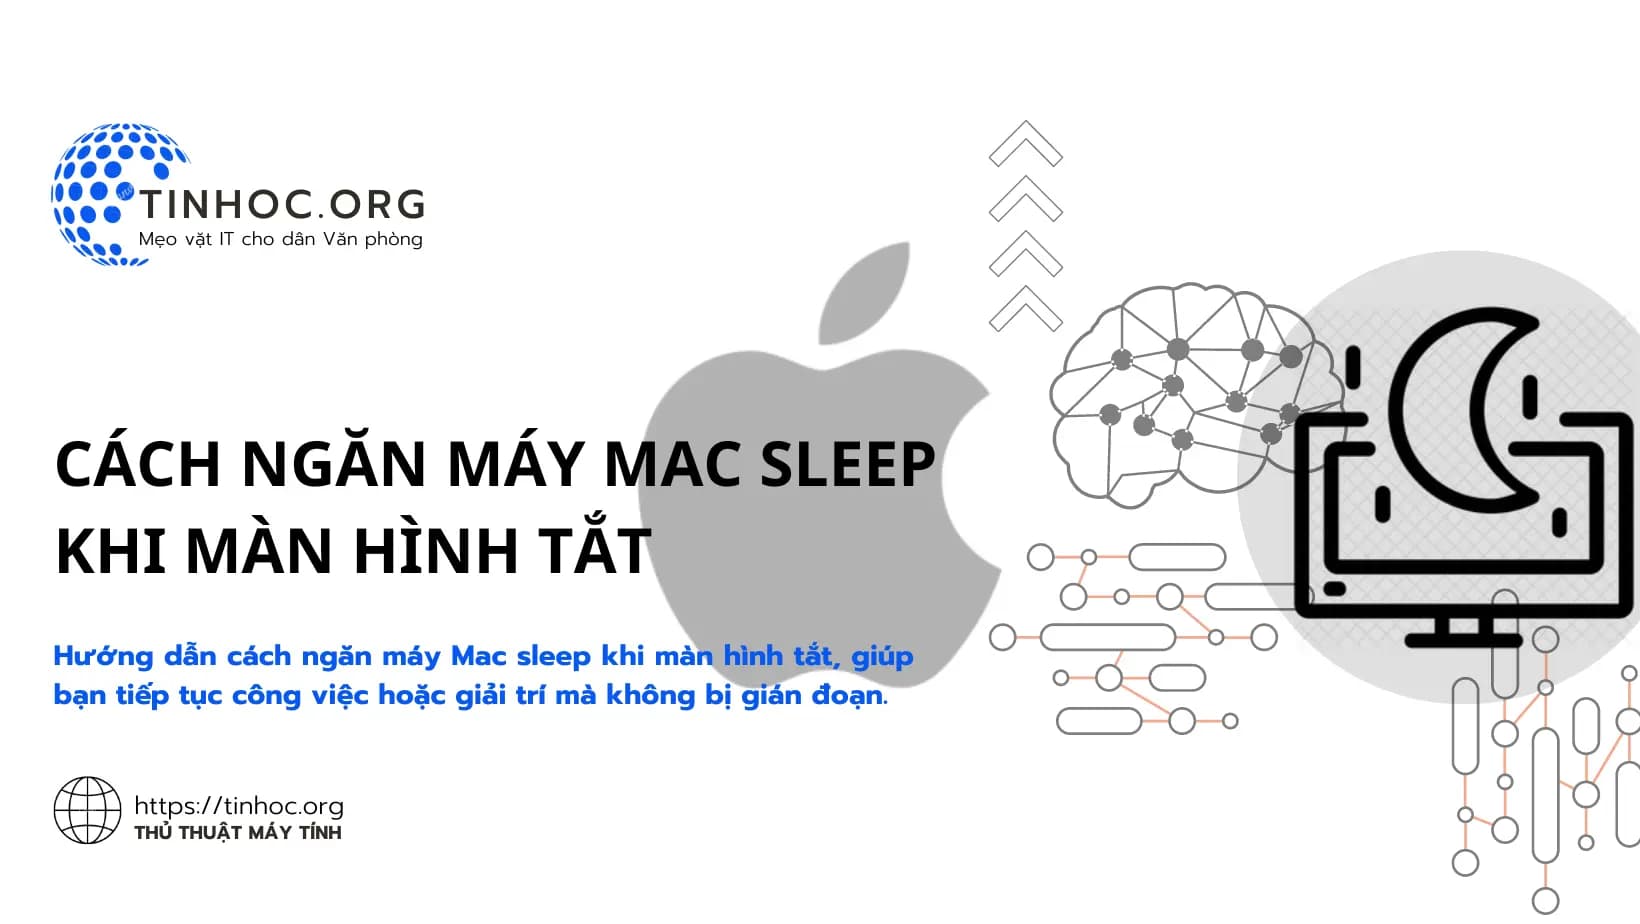 Hướng dẫn cách ngăn máy Mac sleep khi màn hình tắt, giúp bạn tiếp tục công việc hoặc giải trí mà không bị gián đoạn.